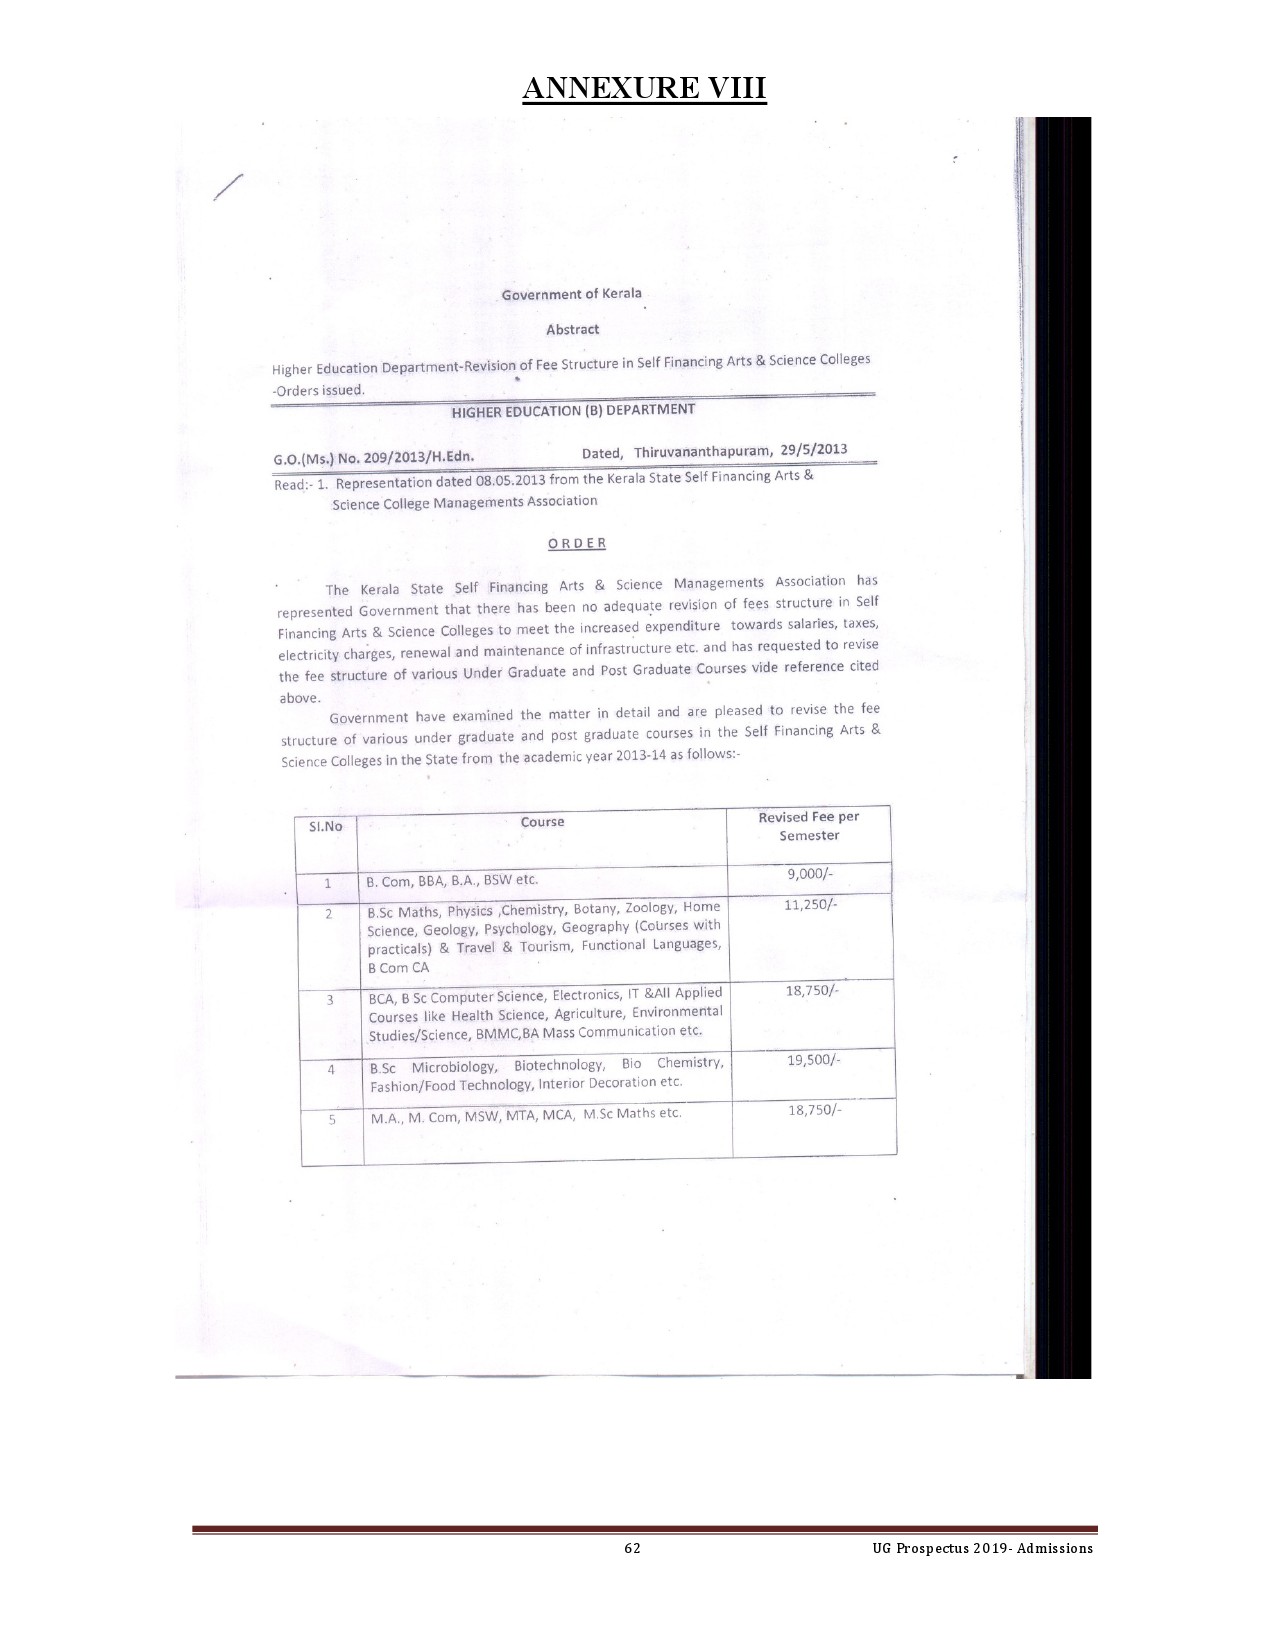 Kerala University UG Admission Prospectus 2019 - Notification Image 62